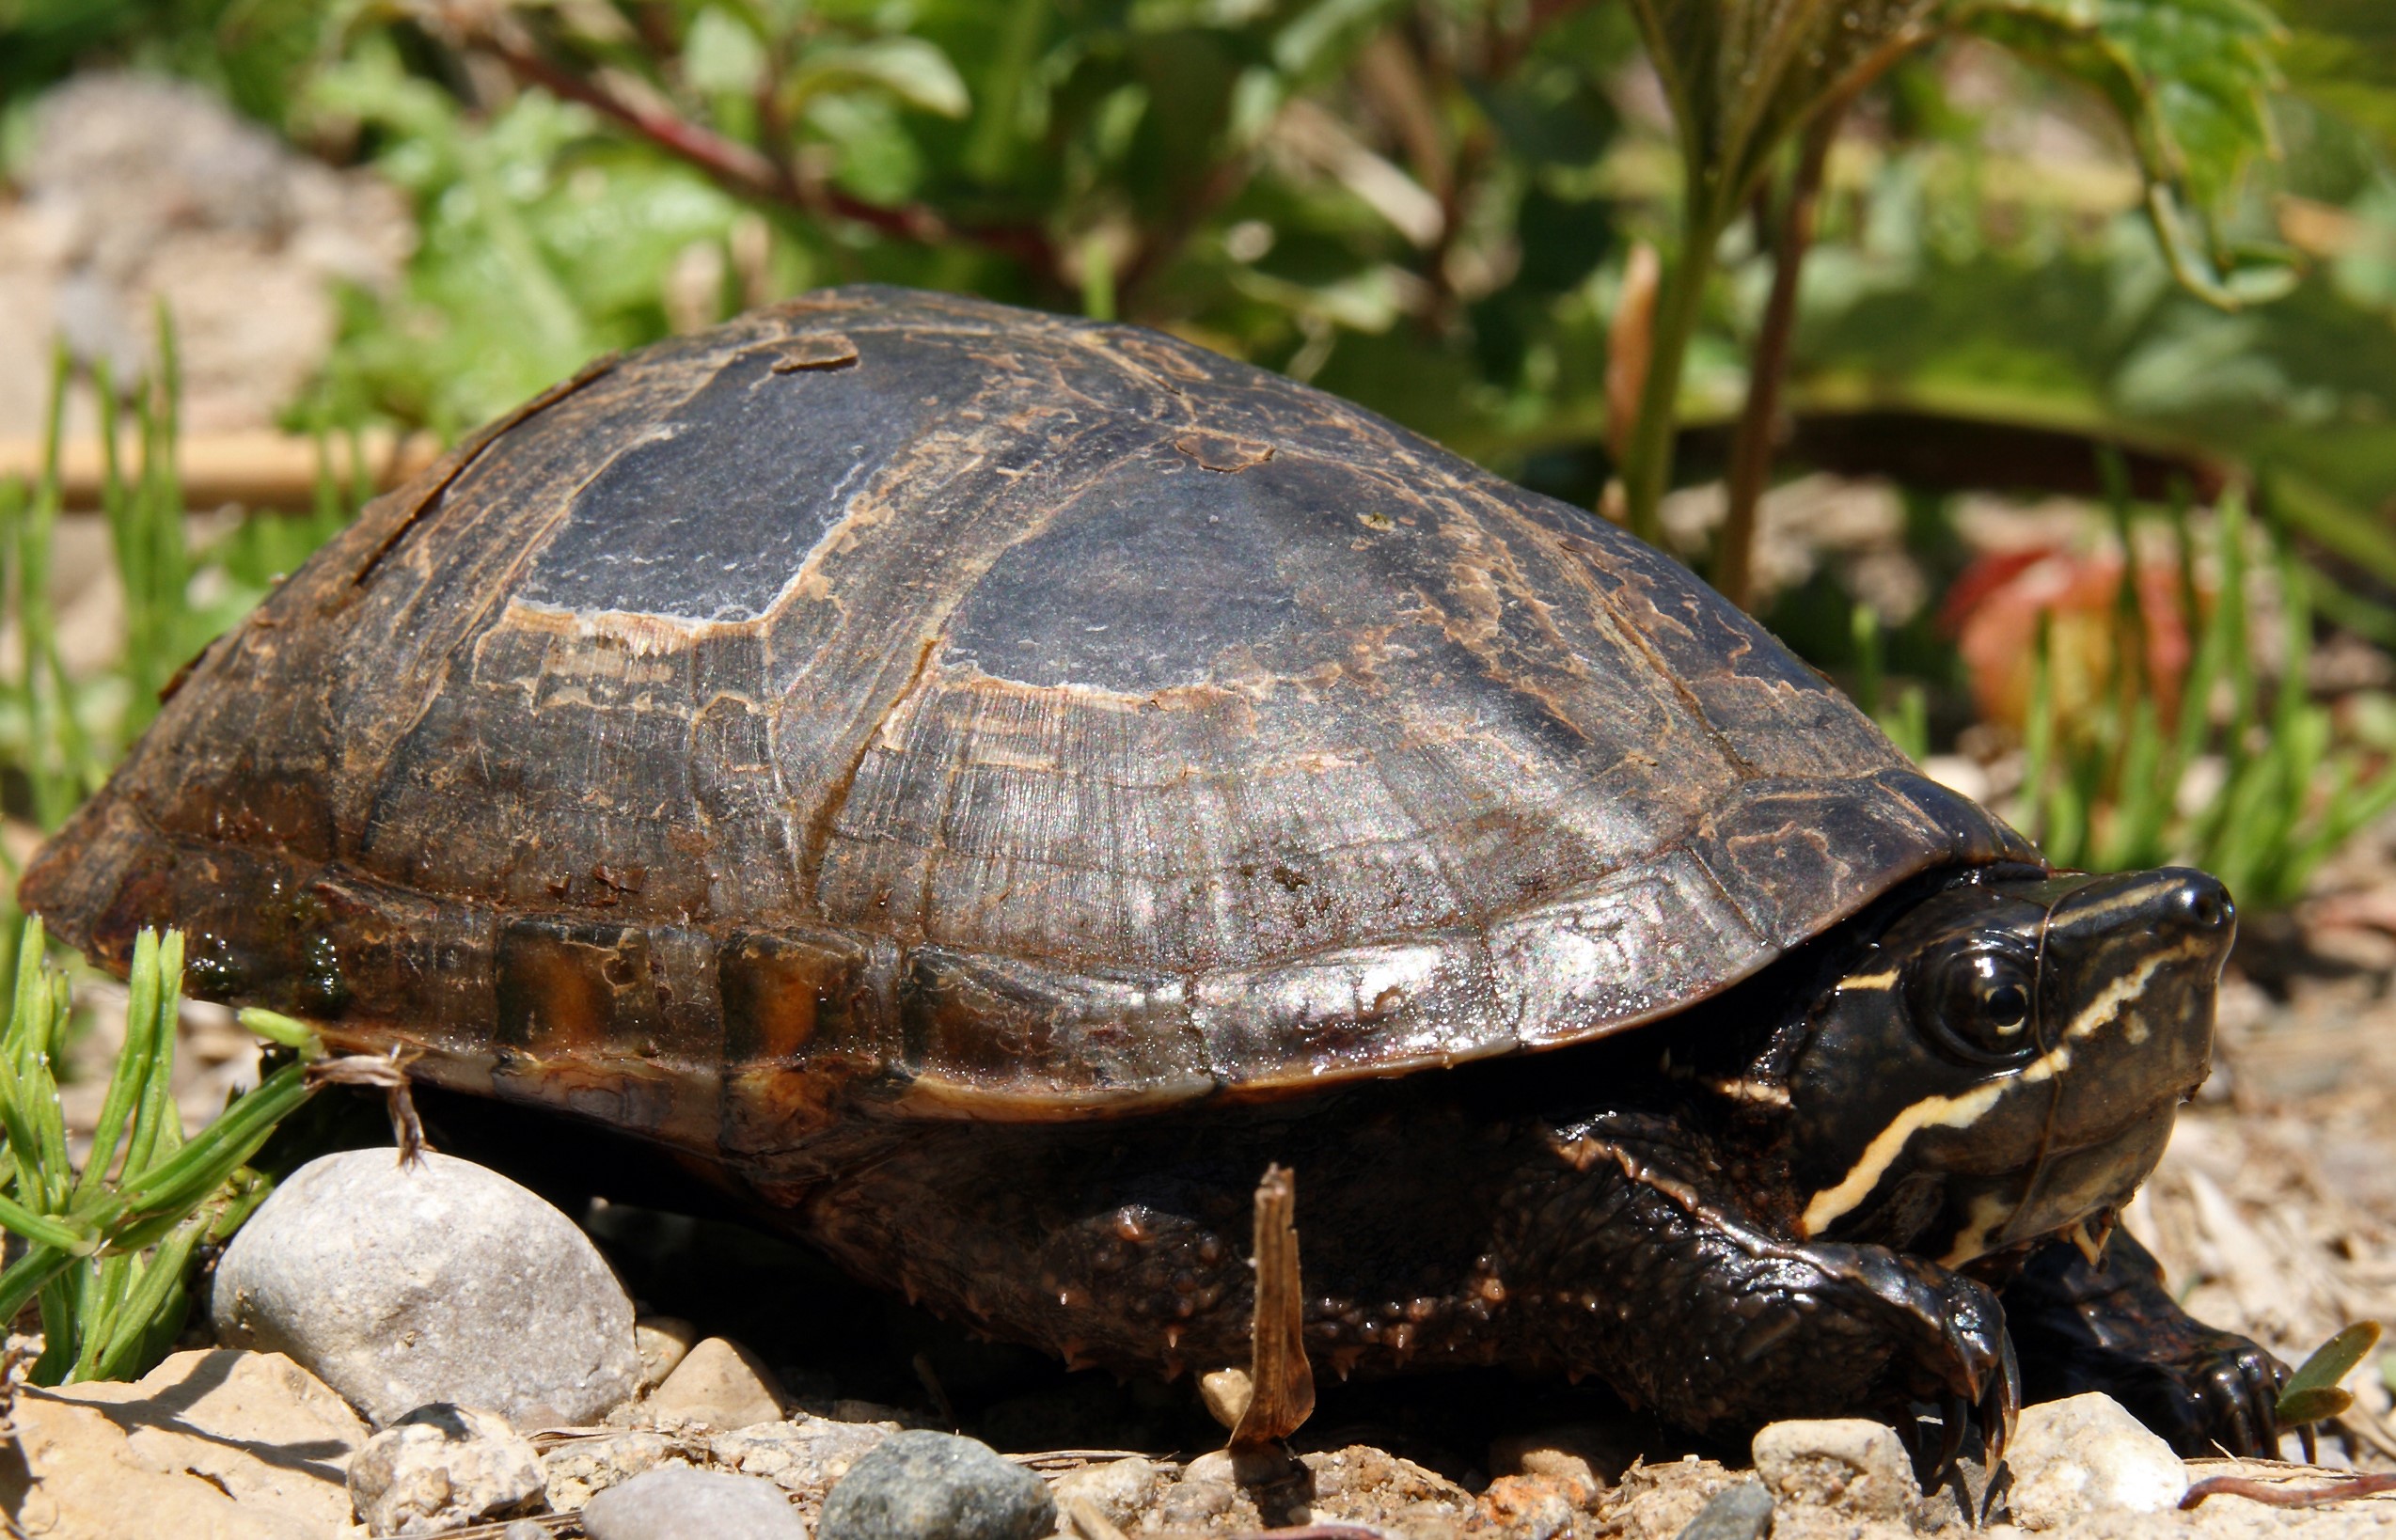 An eastern musk turtle on rocks.